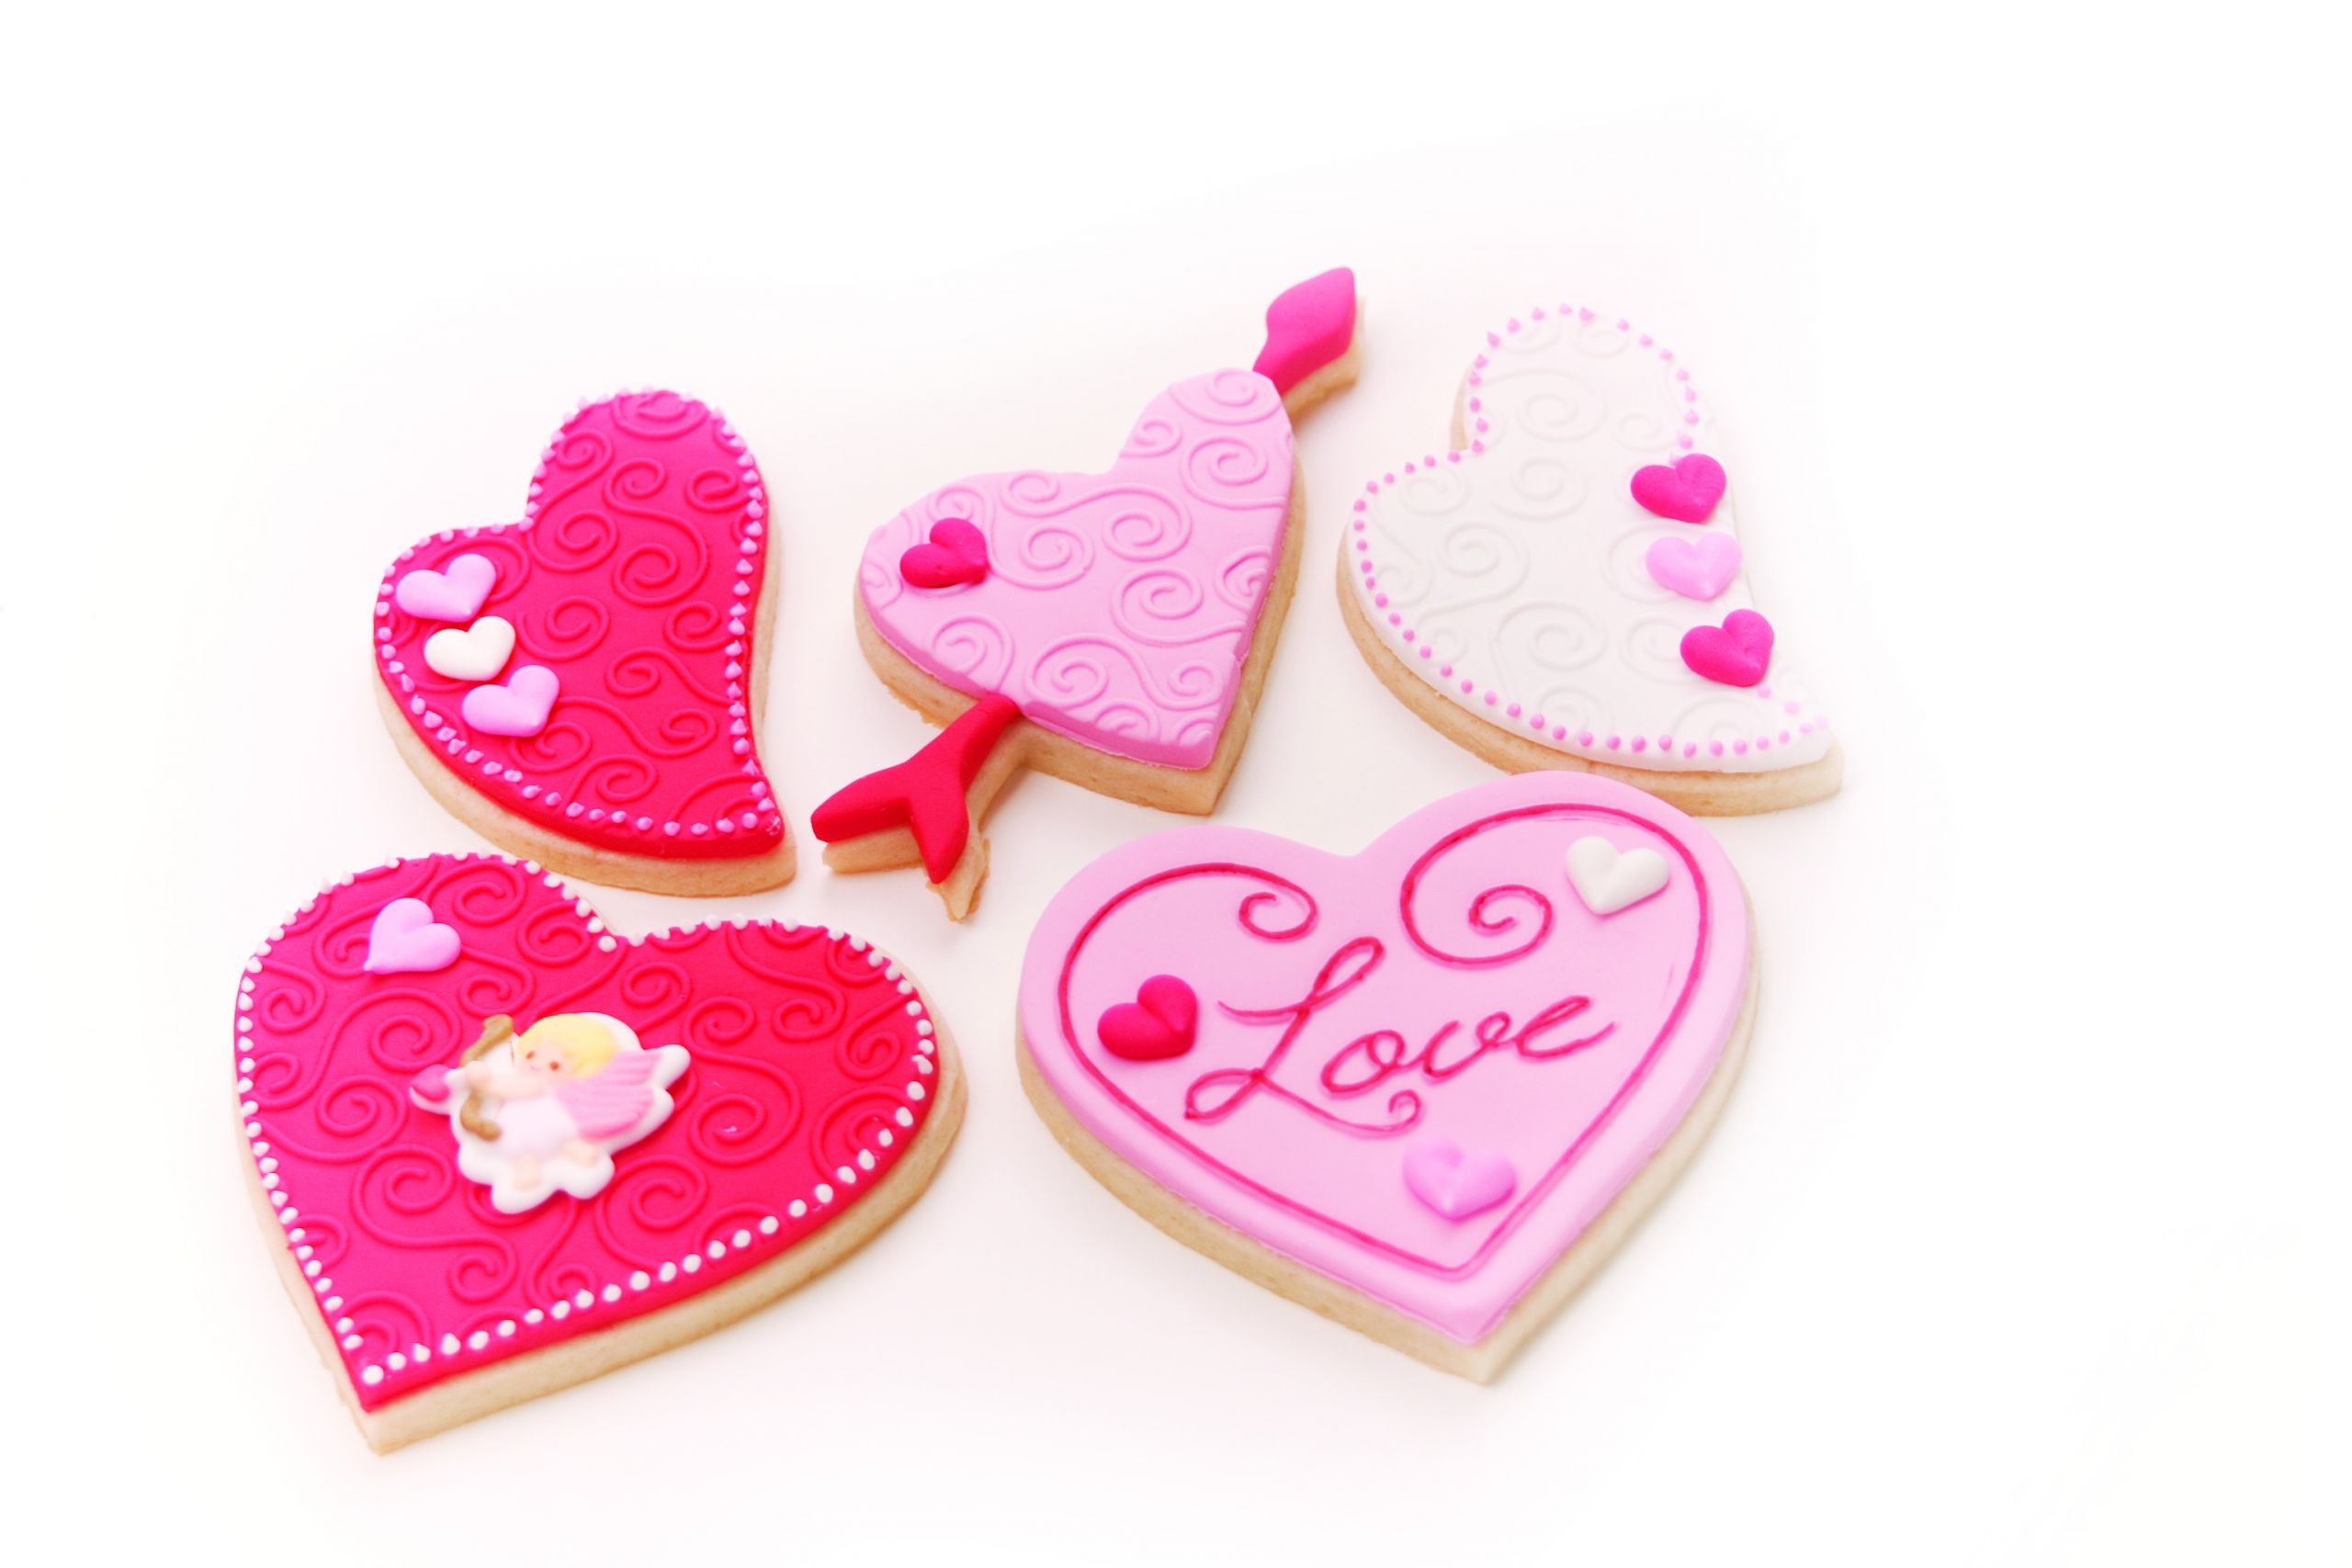 Valentine Sugar Cookies Decorating Ideas
 Valentine’s Day